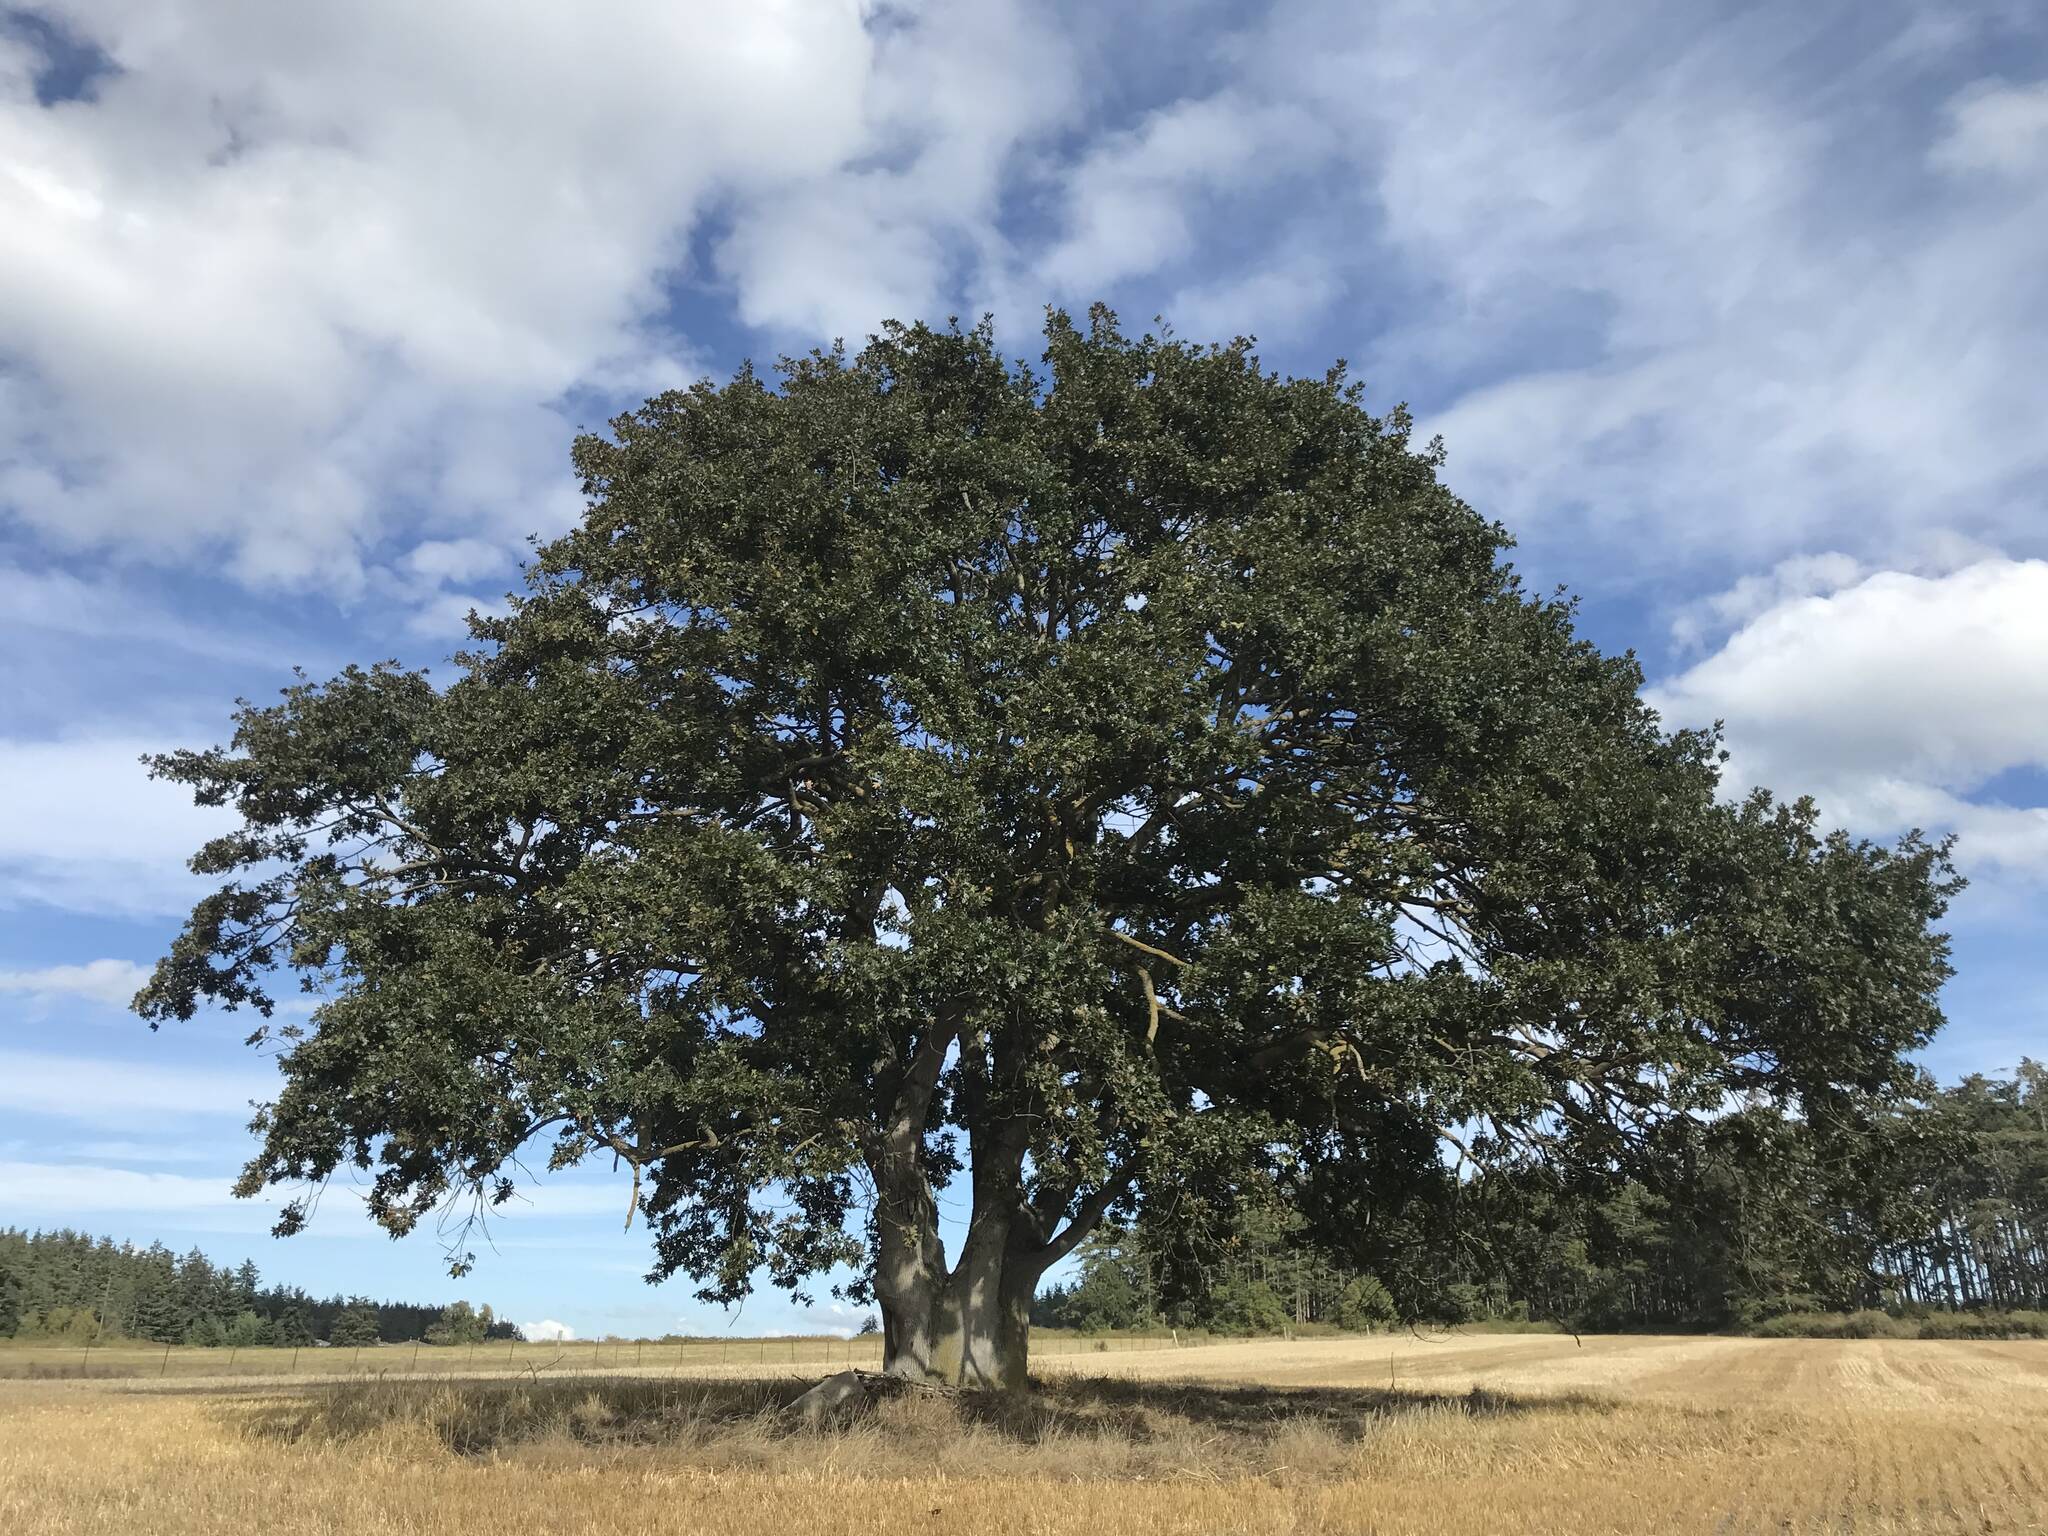 A Garry oak tree. (Photo by Laura Renninger.)